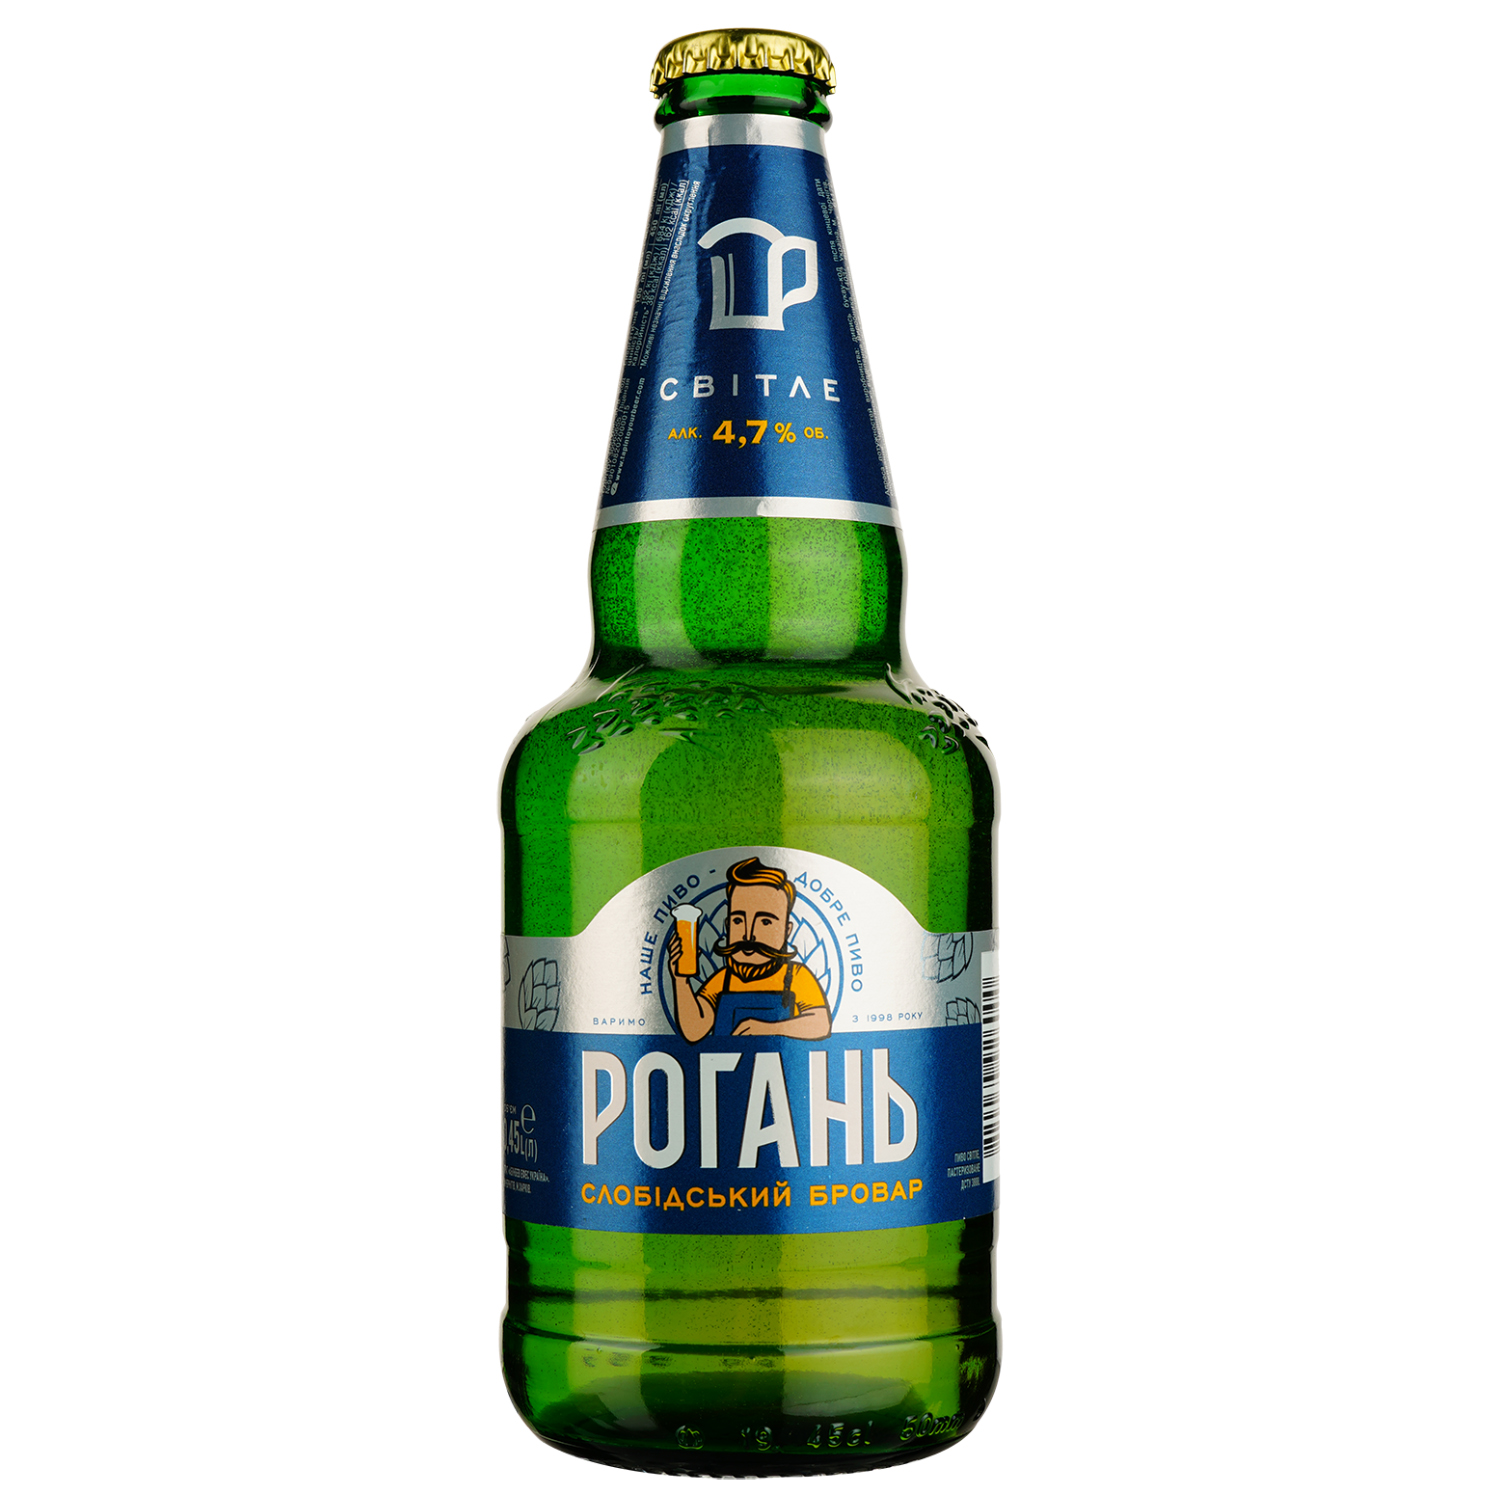 Пиво Рогань Слободской Бровар, светлое, 4,7%, 0,45 л - фото 1